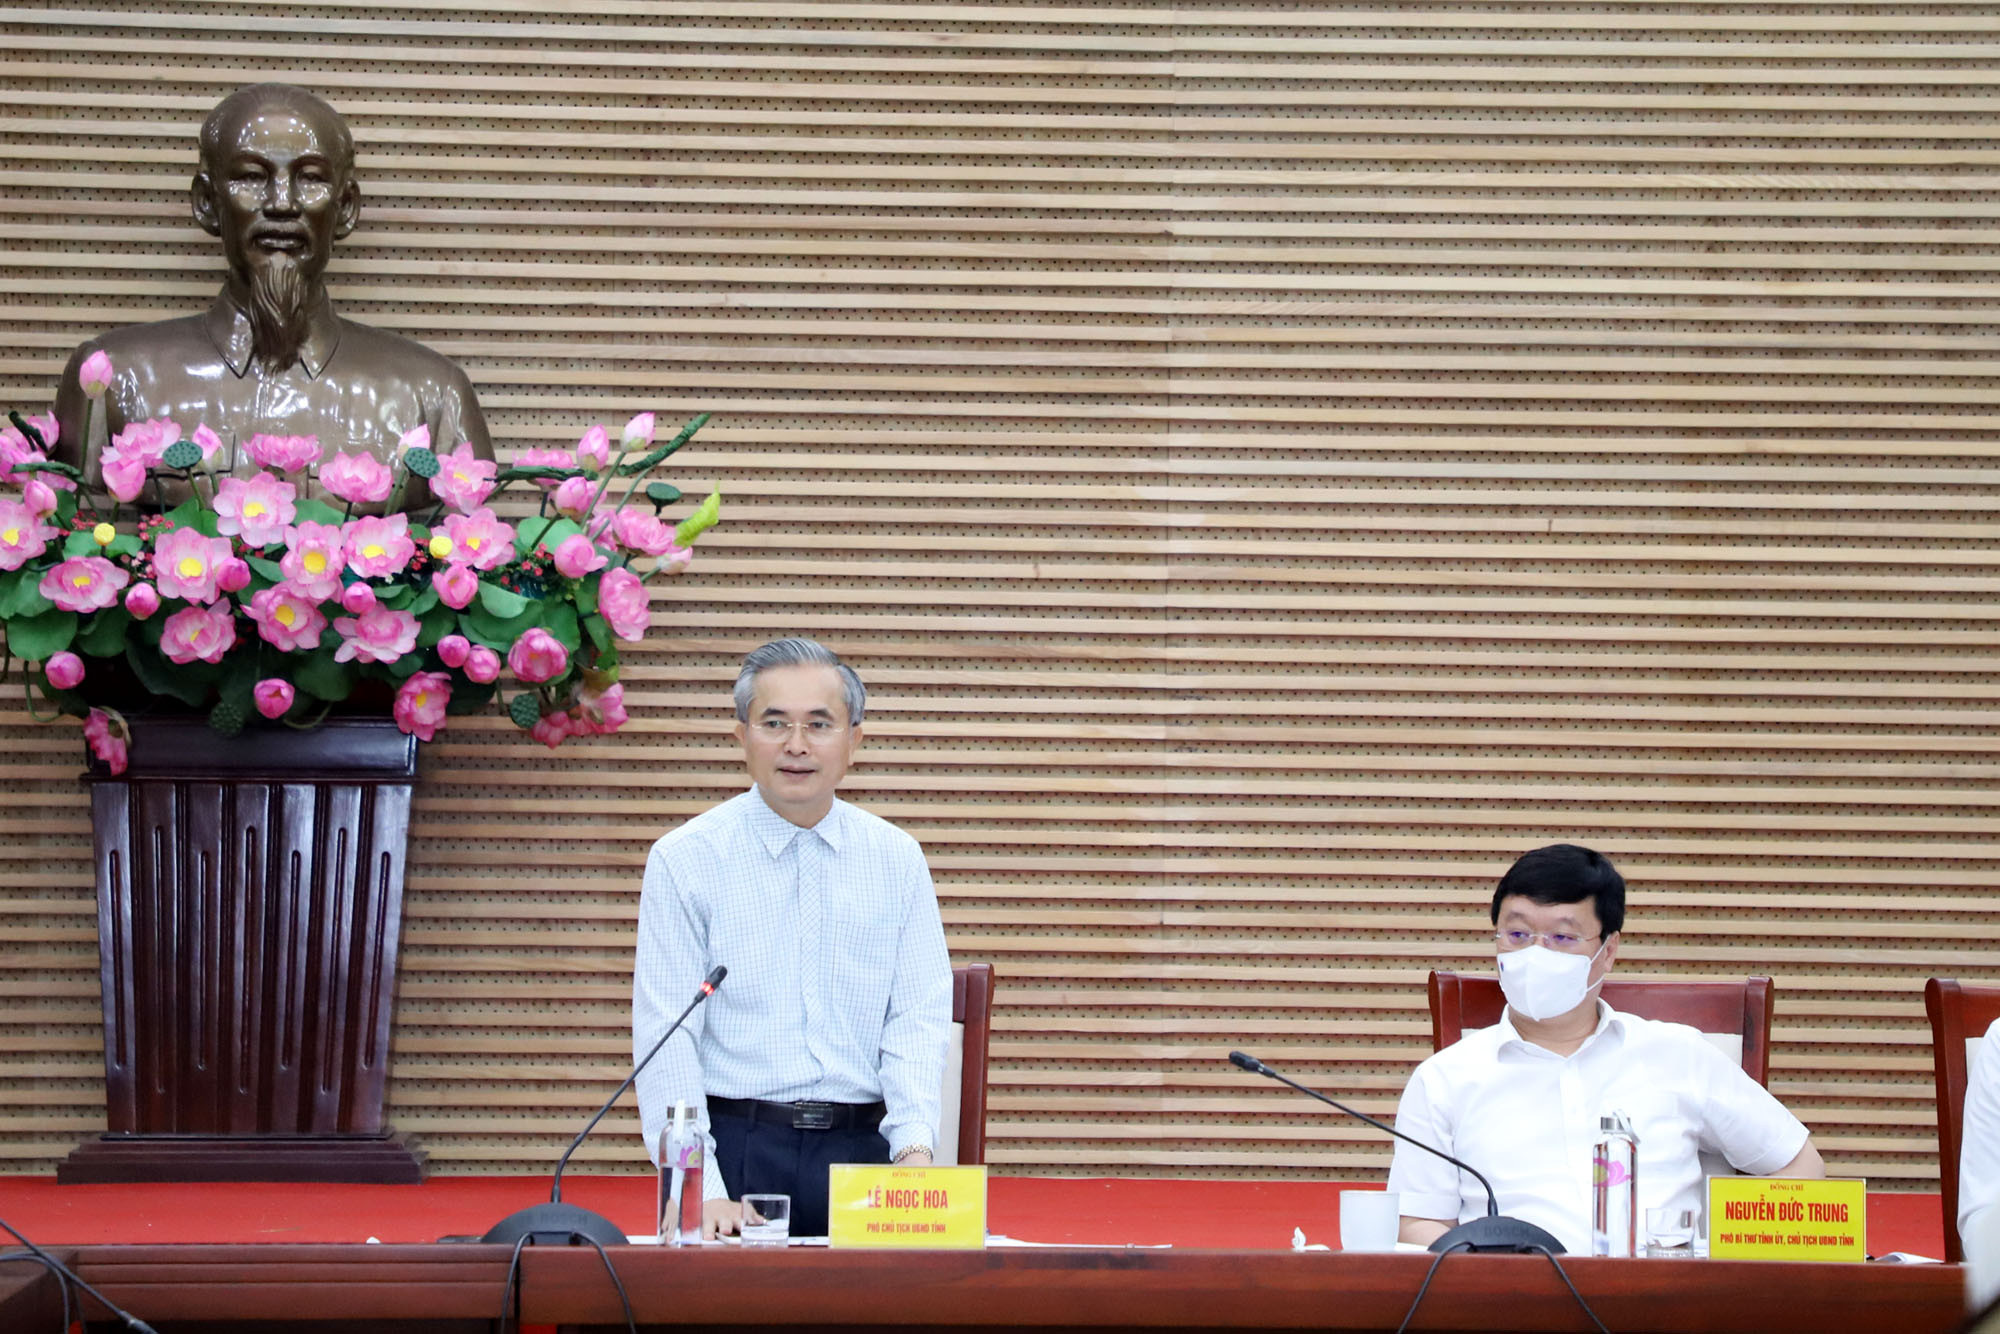 Đồng chí Lê Ngọc Hoa - Phó Chủ tịch UBND tỉnh phát biểu tại buổi làm việc. Ảnh: Phạm Bằng